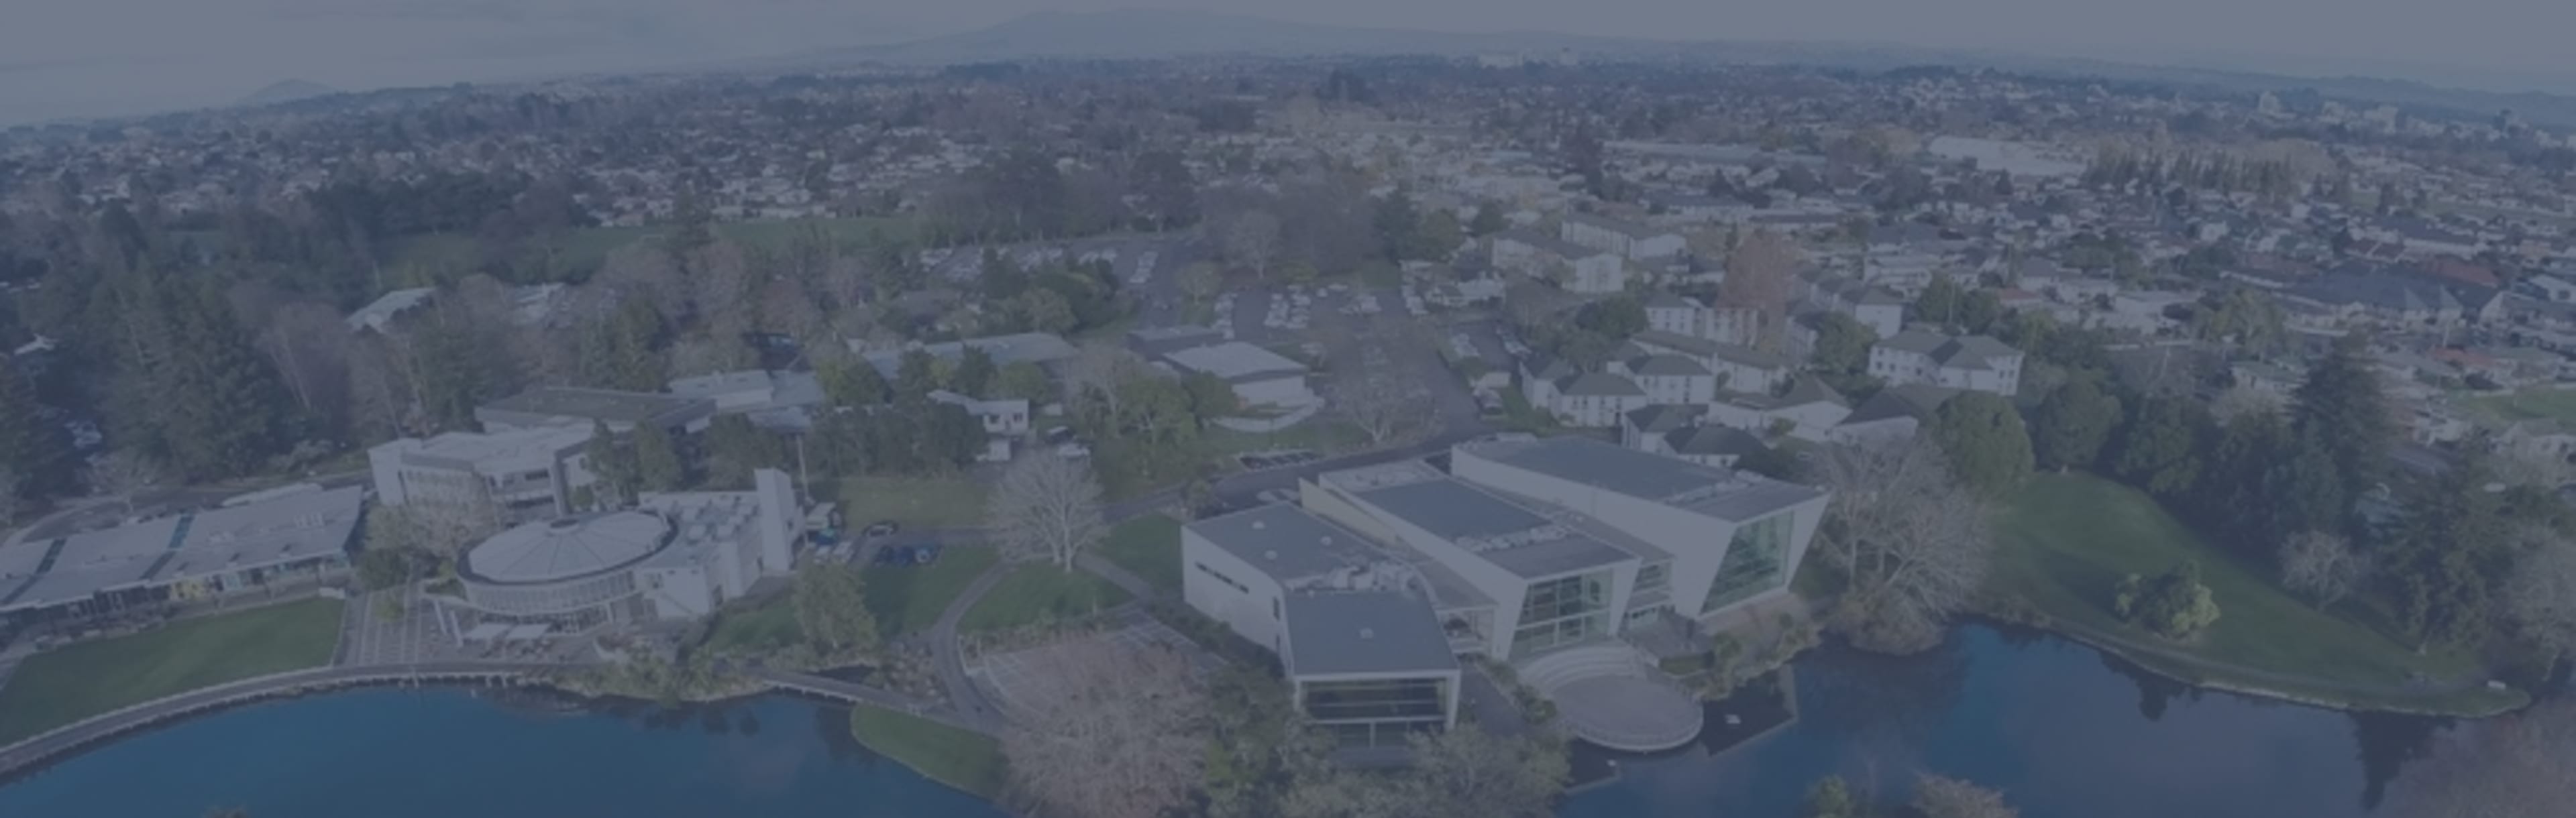 The University of Waikato کارشناسی ارشد قوانین